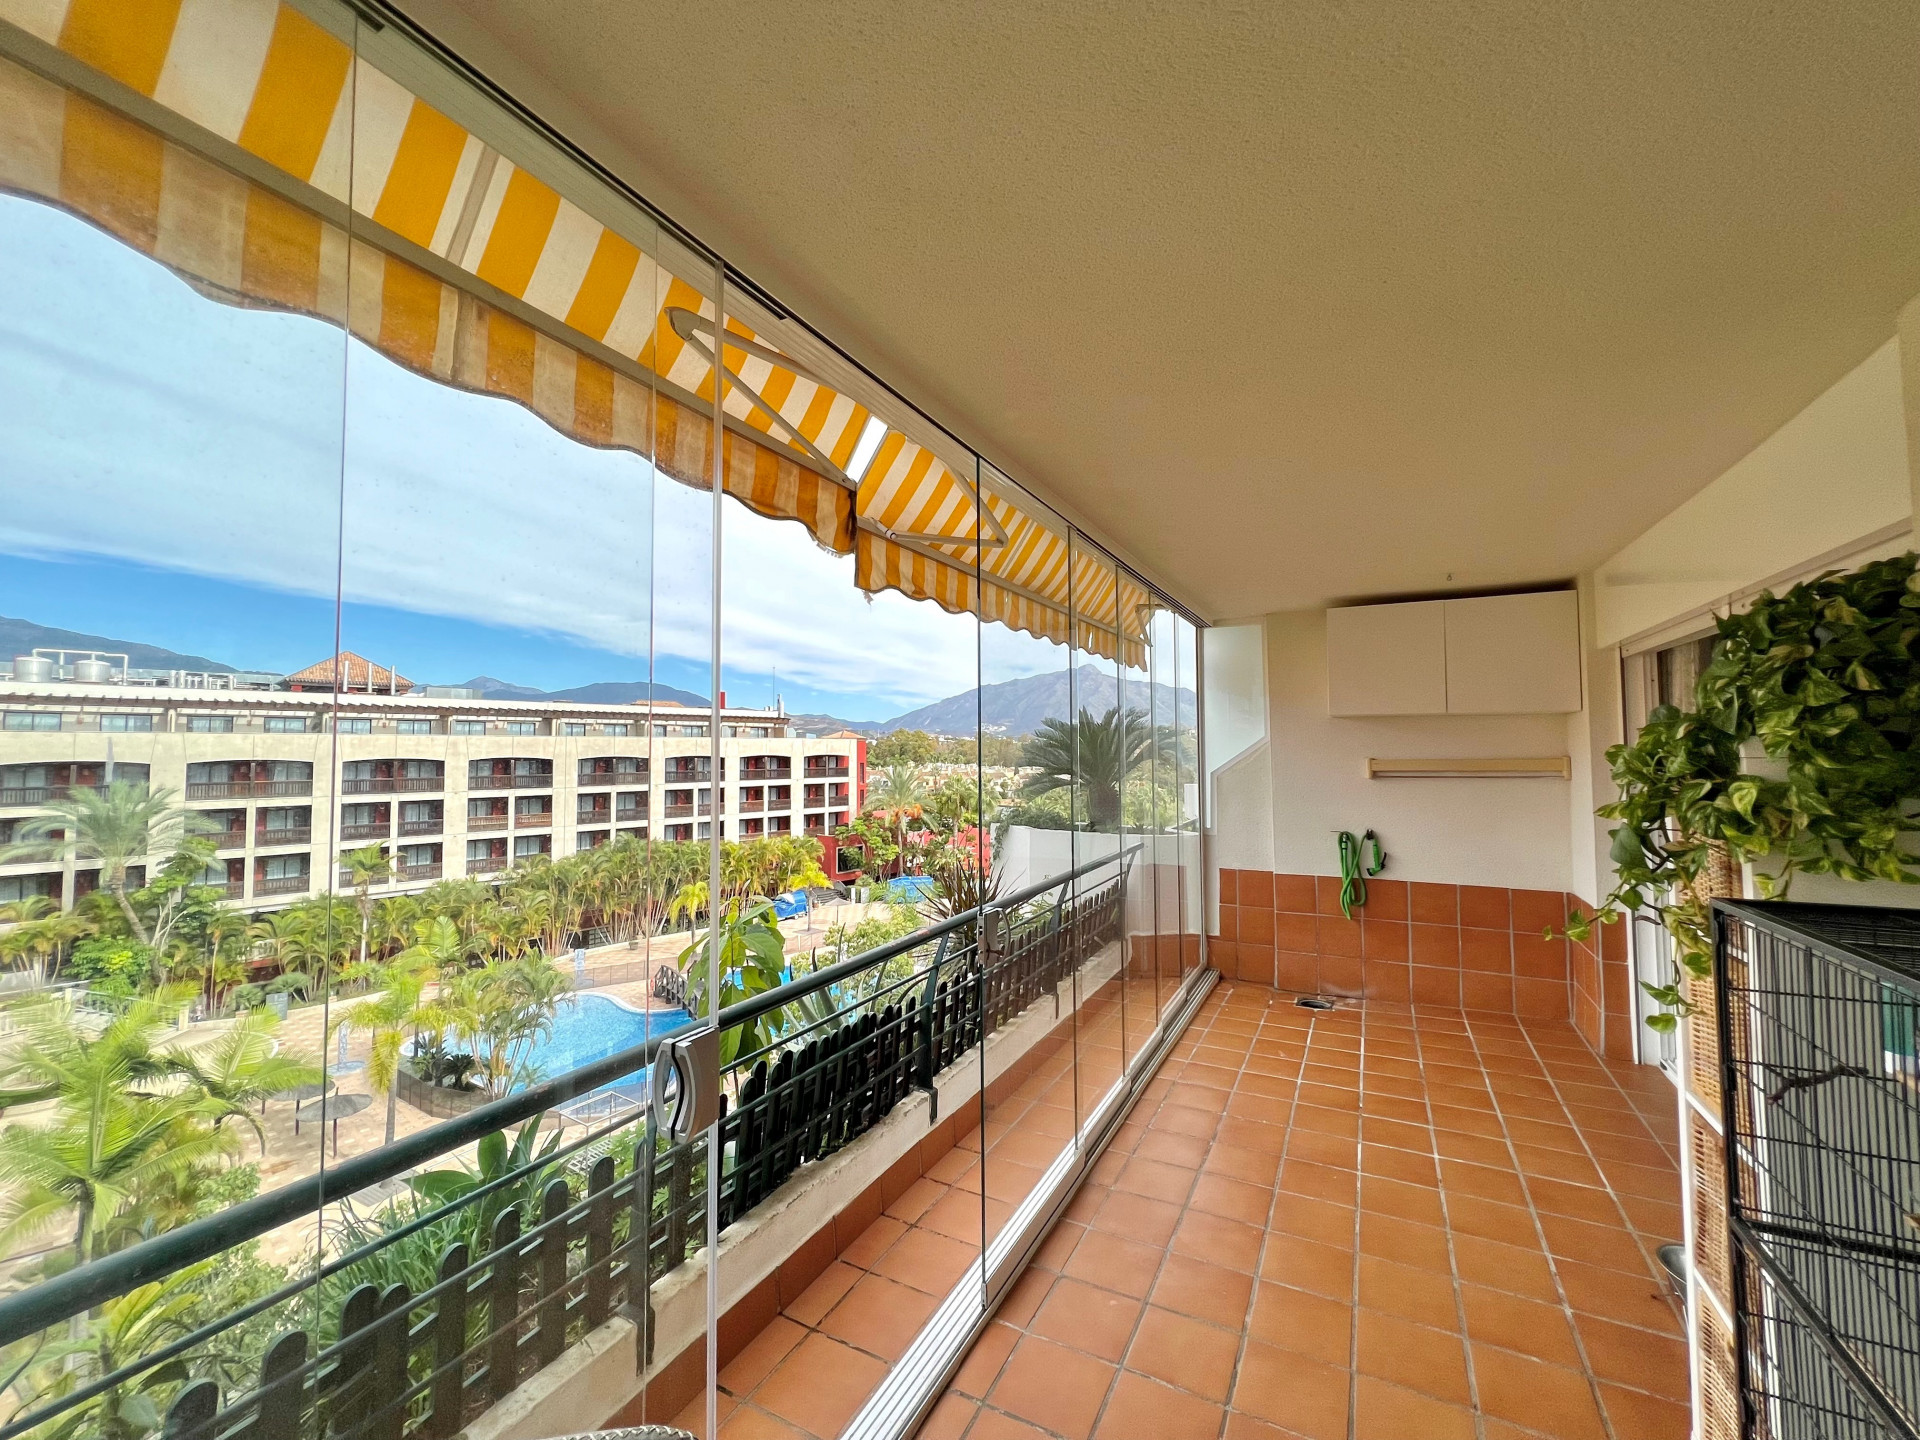 Apartamento en última planta con una amplia terraza acristalada que disfruta del sol de la tarde en Campos de Guadalmina